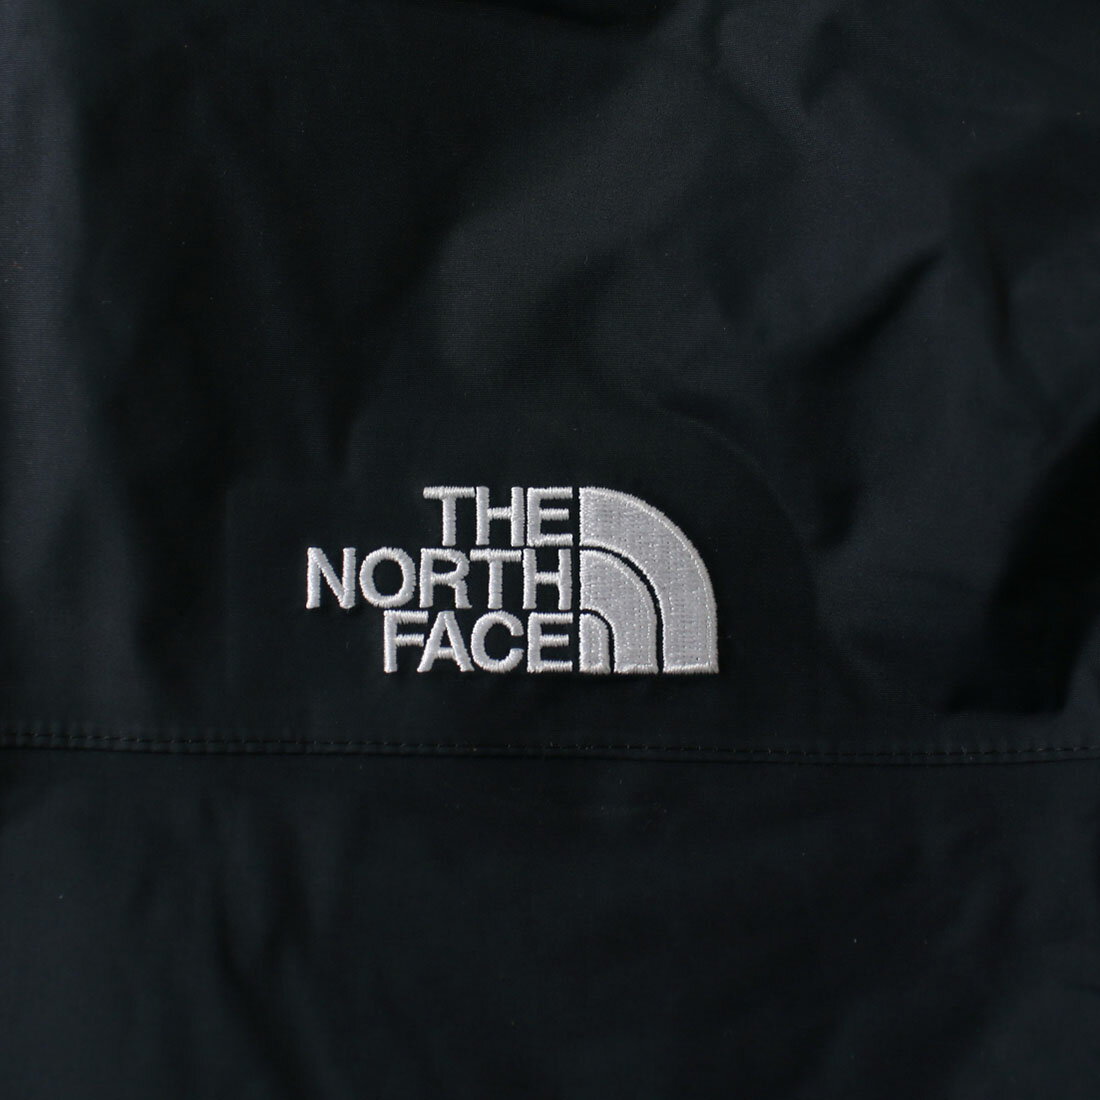 ノースフェイス THE NORTH FACE レインコート アウター【送料無料】Mountain Rain Coat（130cm 140cm 150cm）メール便不可 マウンテンジャケット